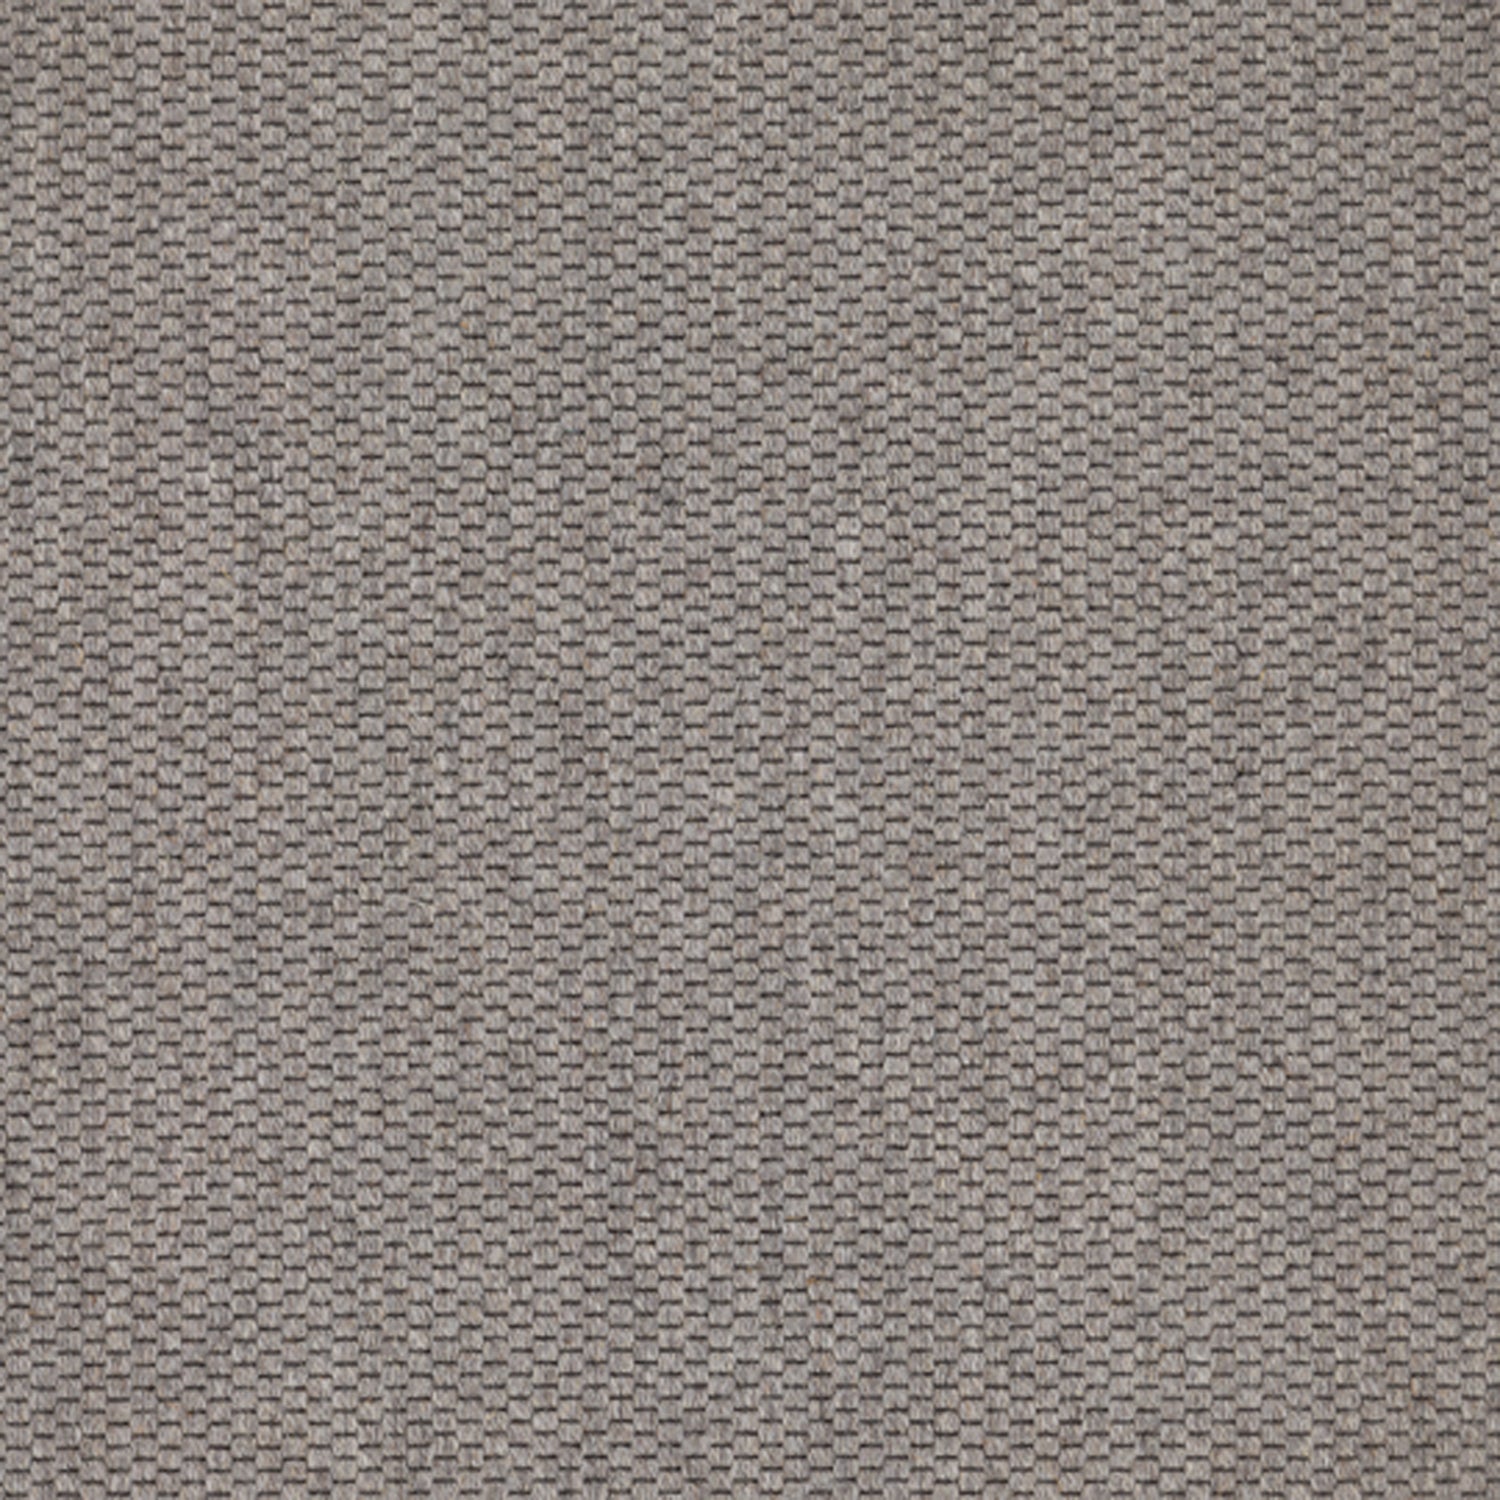 Wool broadloom carpet swatch in a flat grid weave in gray.